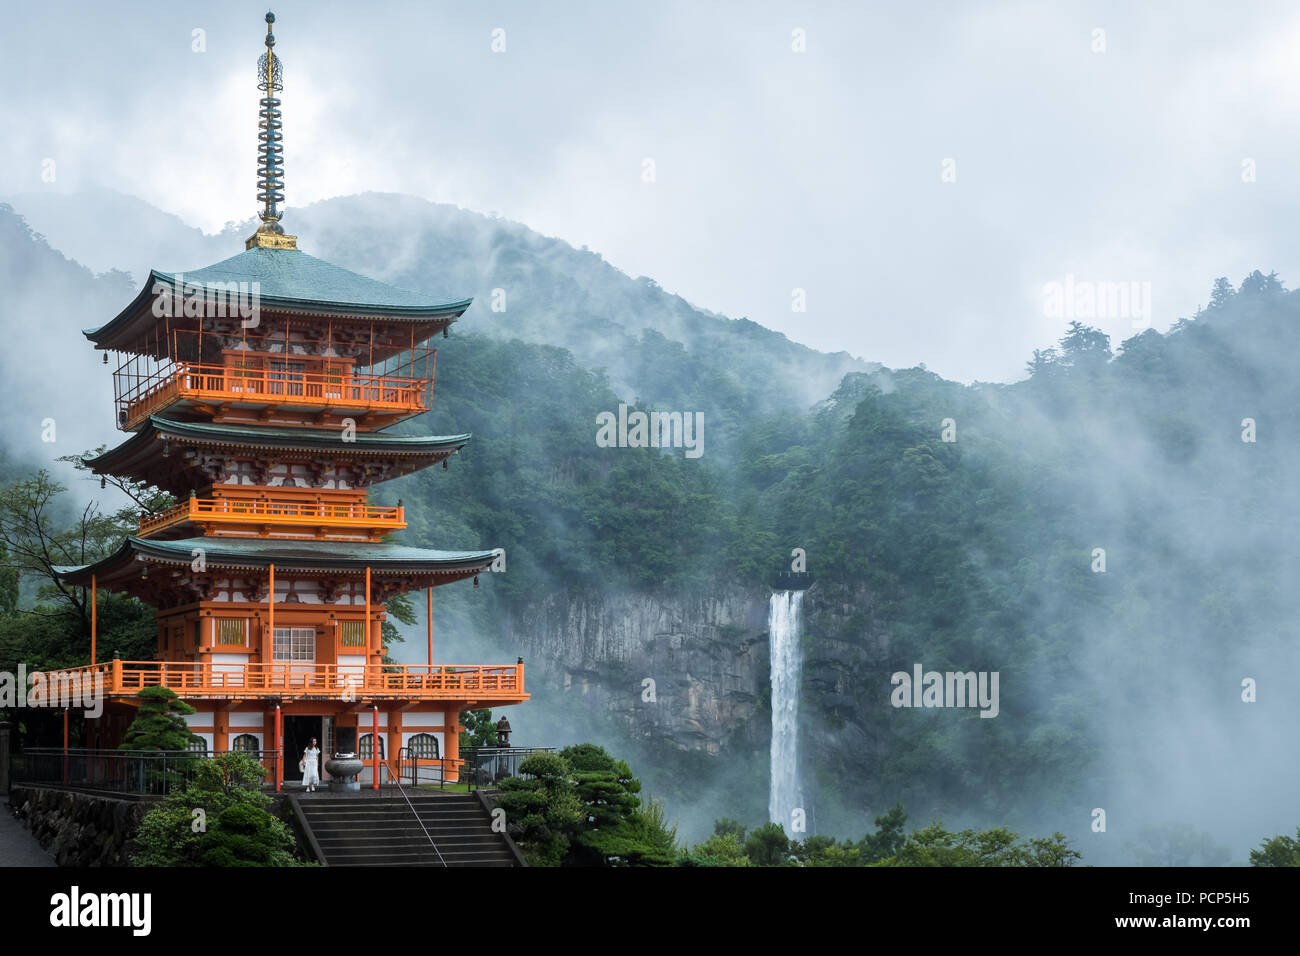 Пагода Сейгантодзи и водопад начи-но-таки